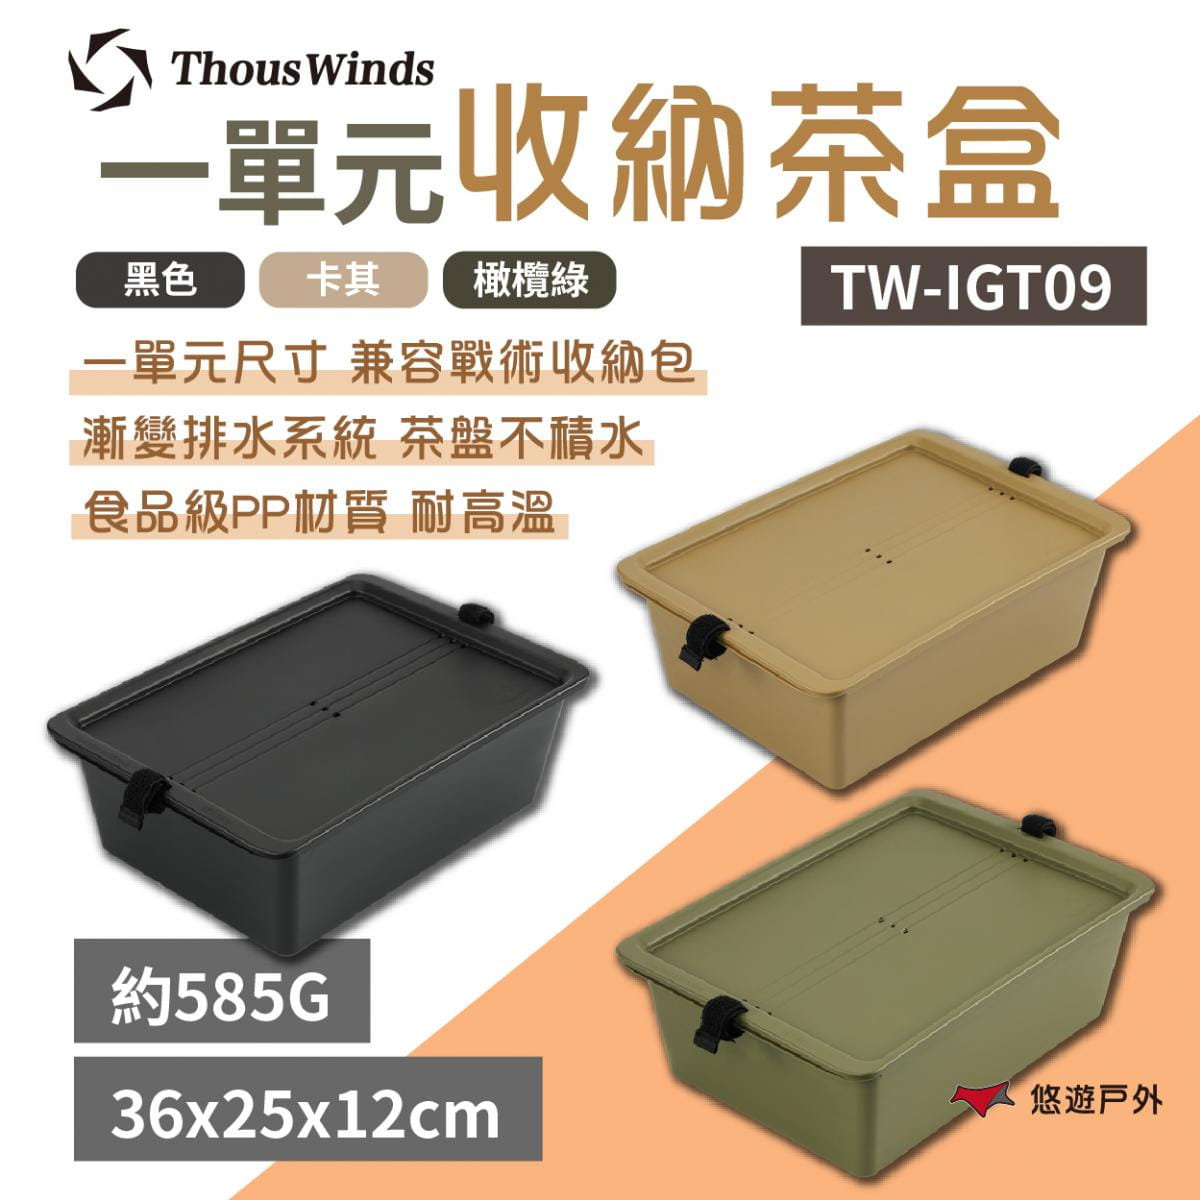 【Thous Winds】 一單元收納茶盒 三色 TW-IGT09B/G/K 悠遊戶外 1